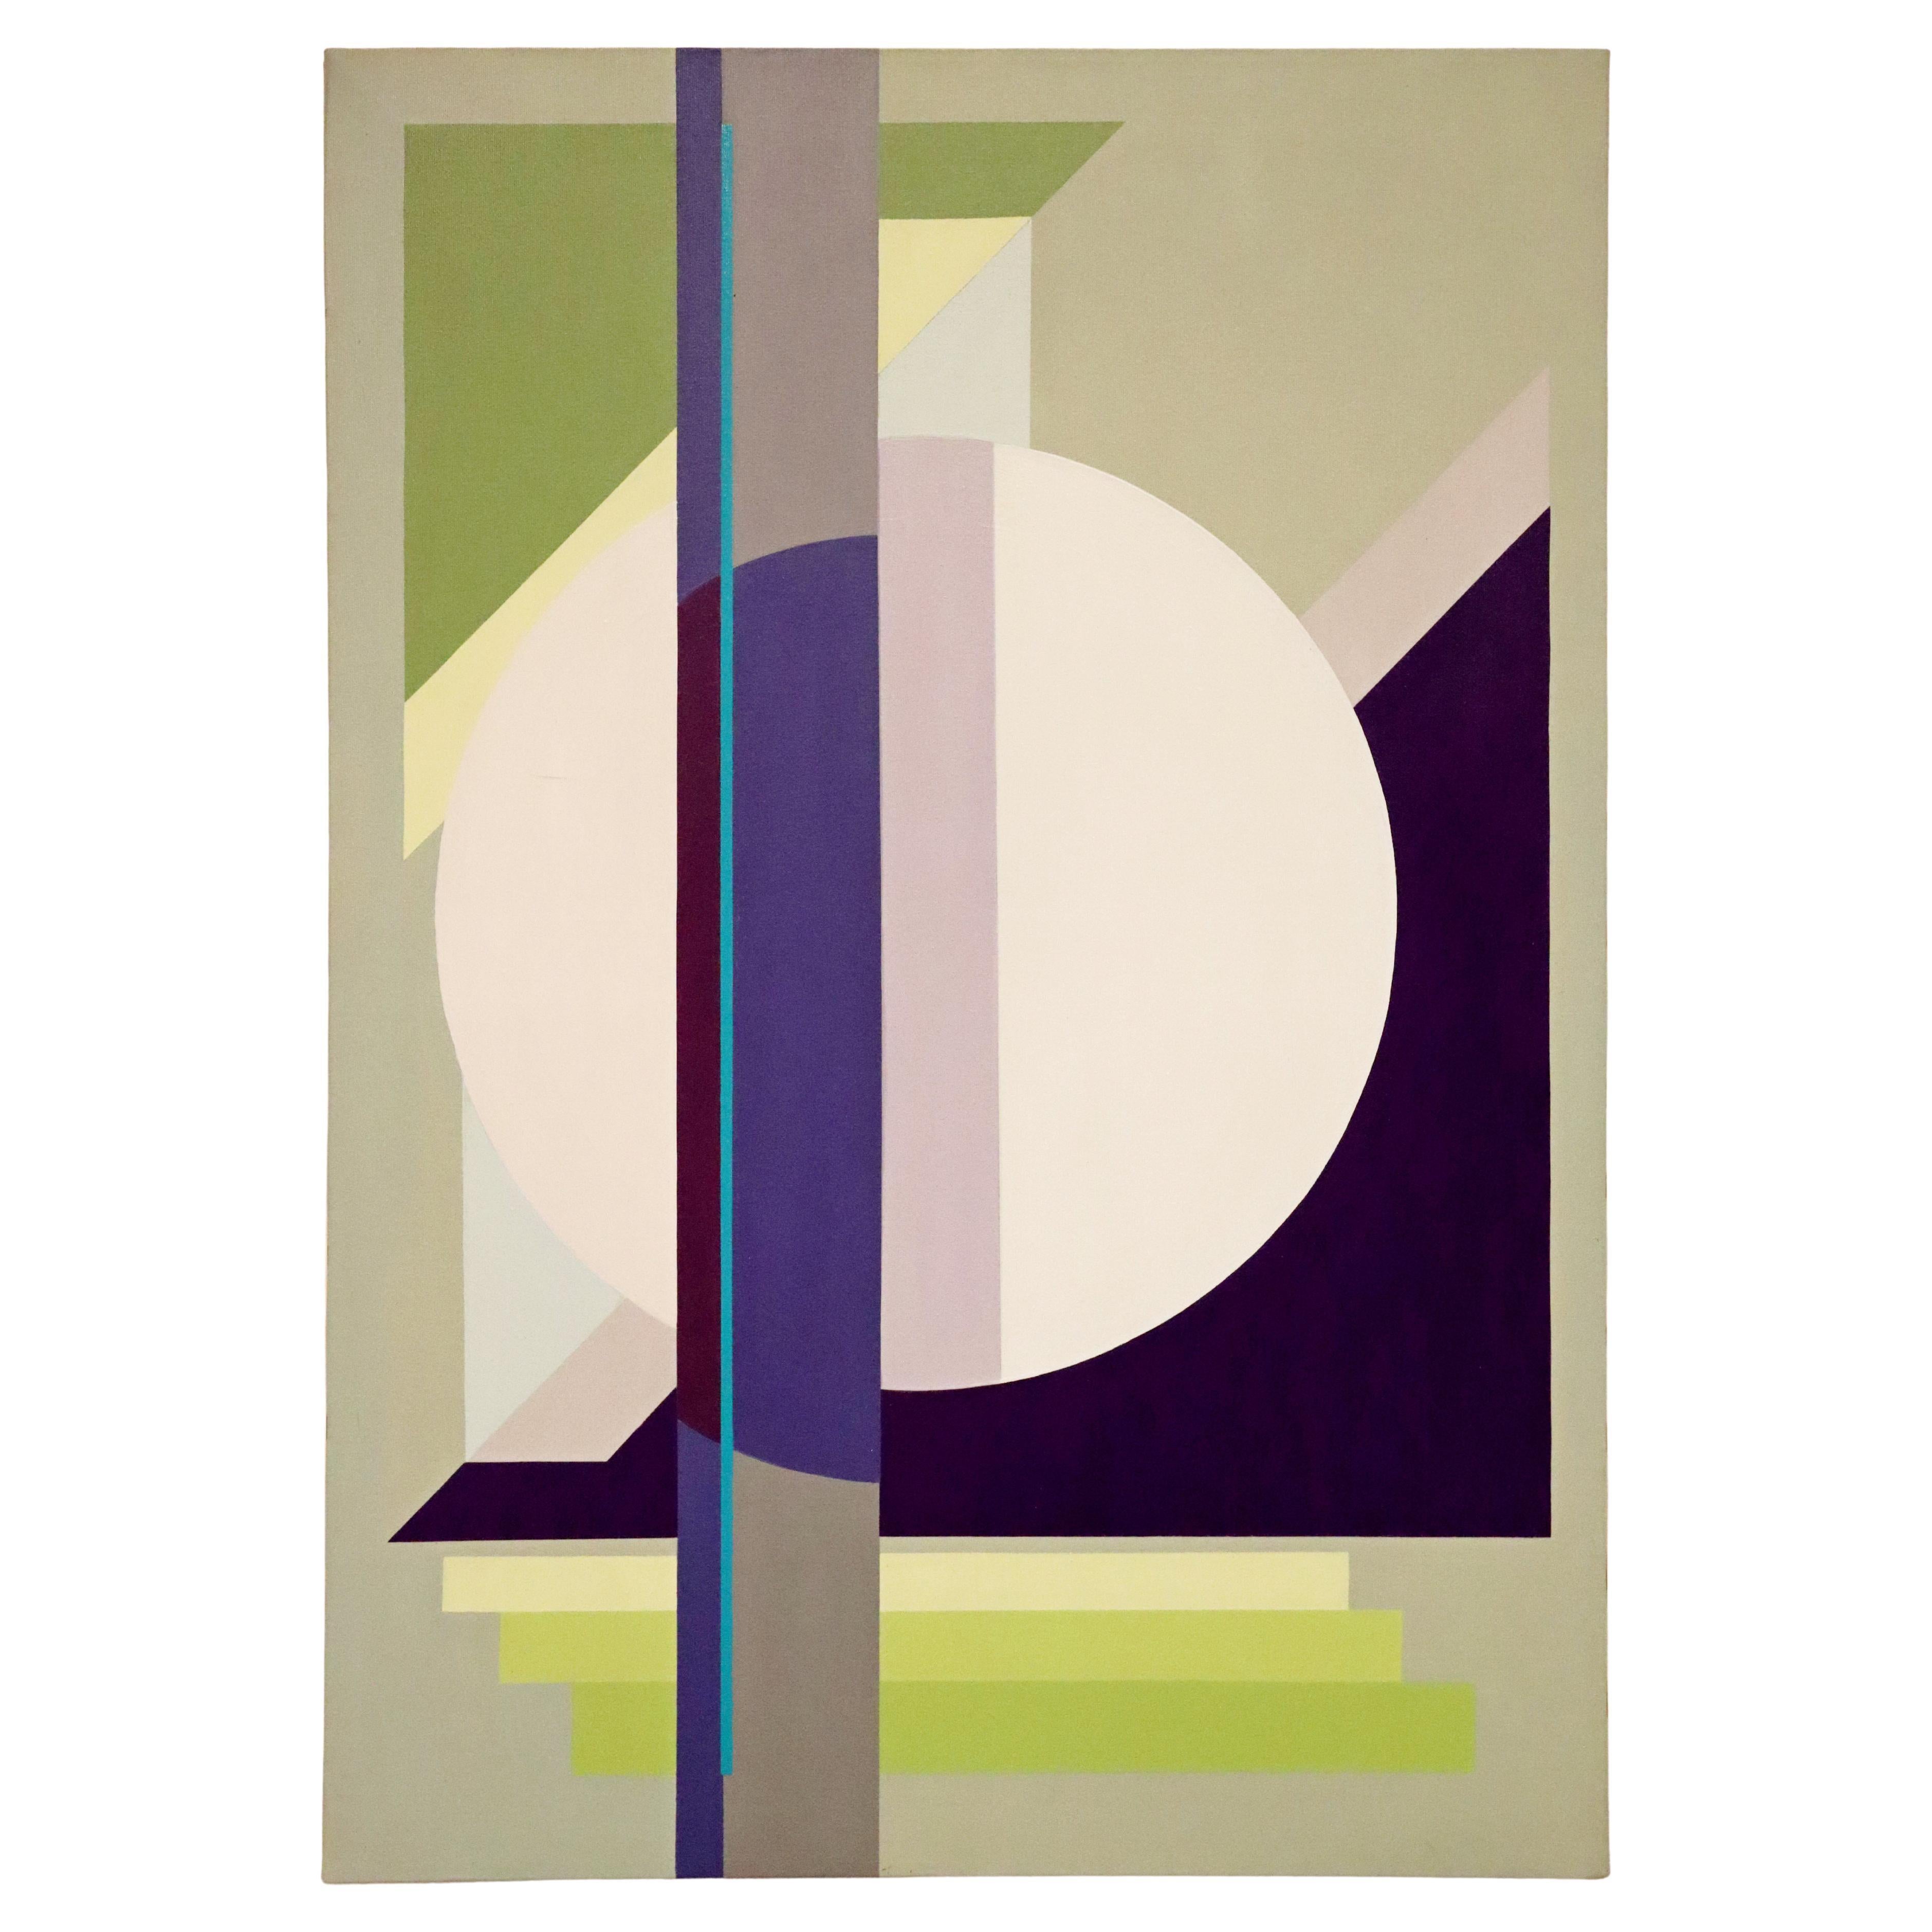 Peinture acrylique sur toile moderniste signée Gunda Hass, vert, violet et gris, années 2010